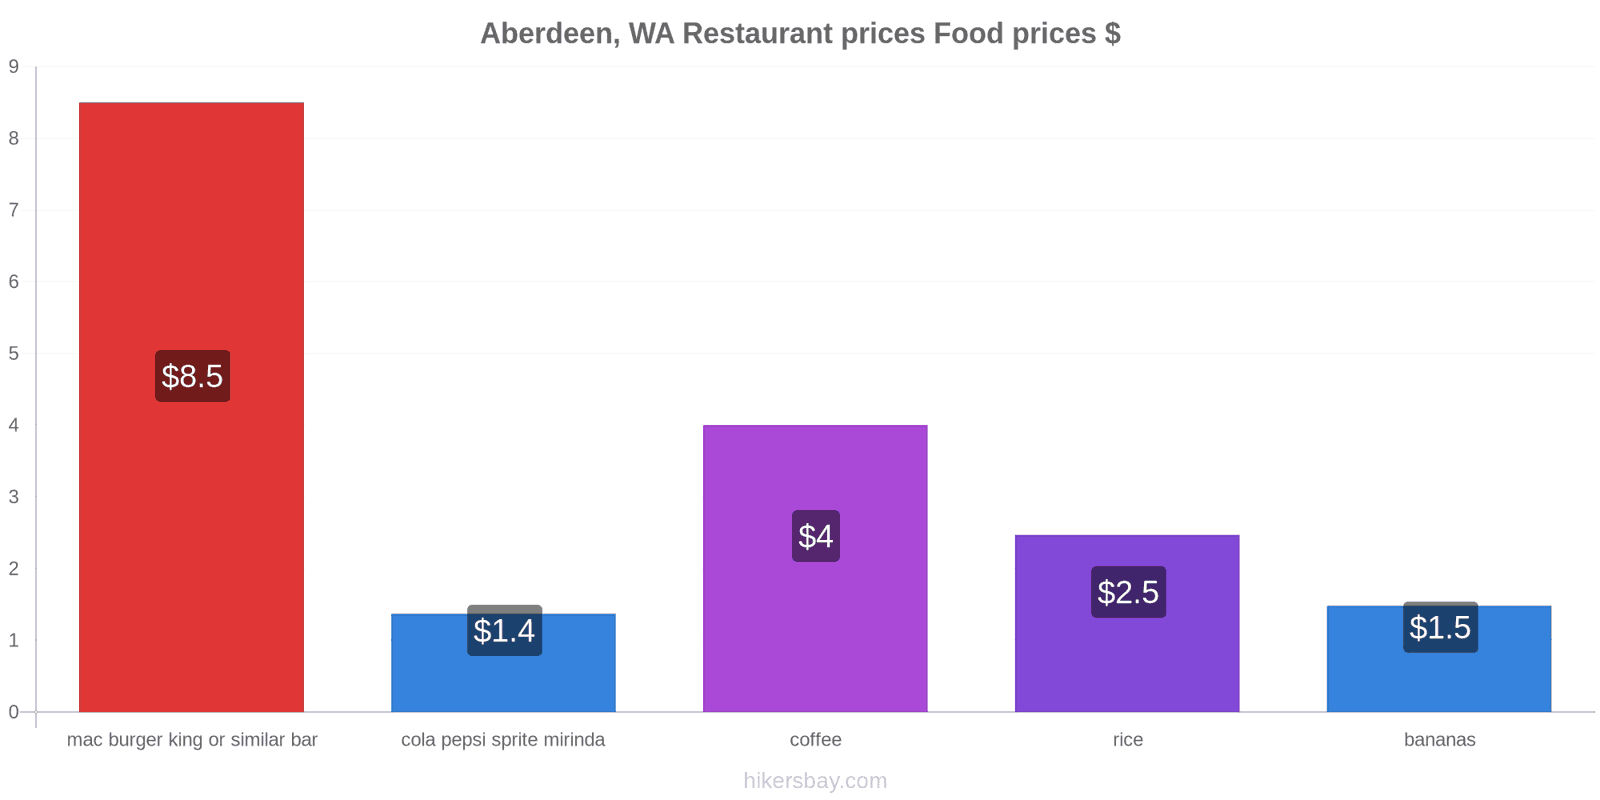 Aberdeen, WA price changes hikersbay.com